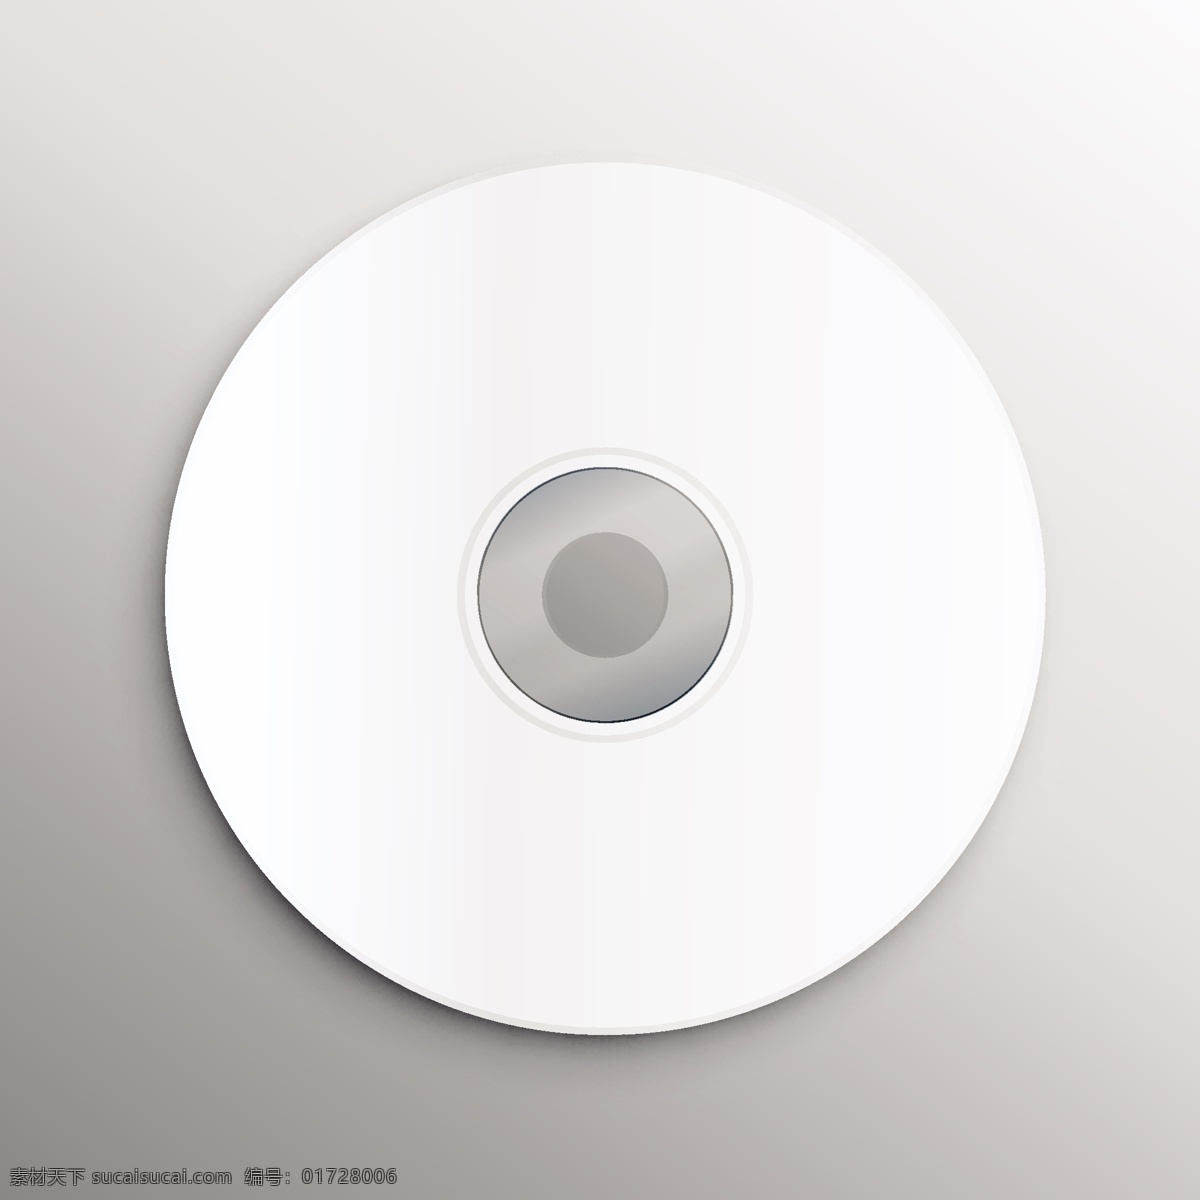 空白 白色 碟片 cd 样机 cd样机 cd模板 碟片样机